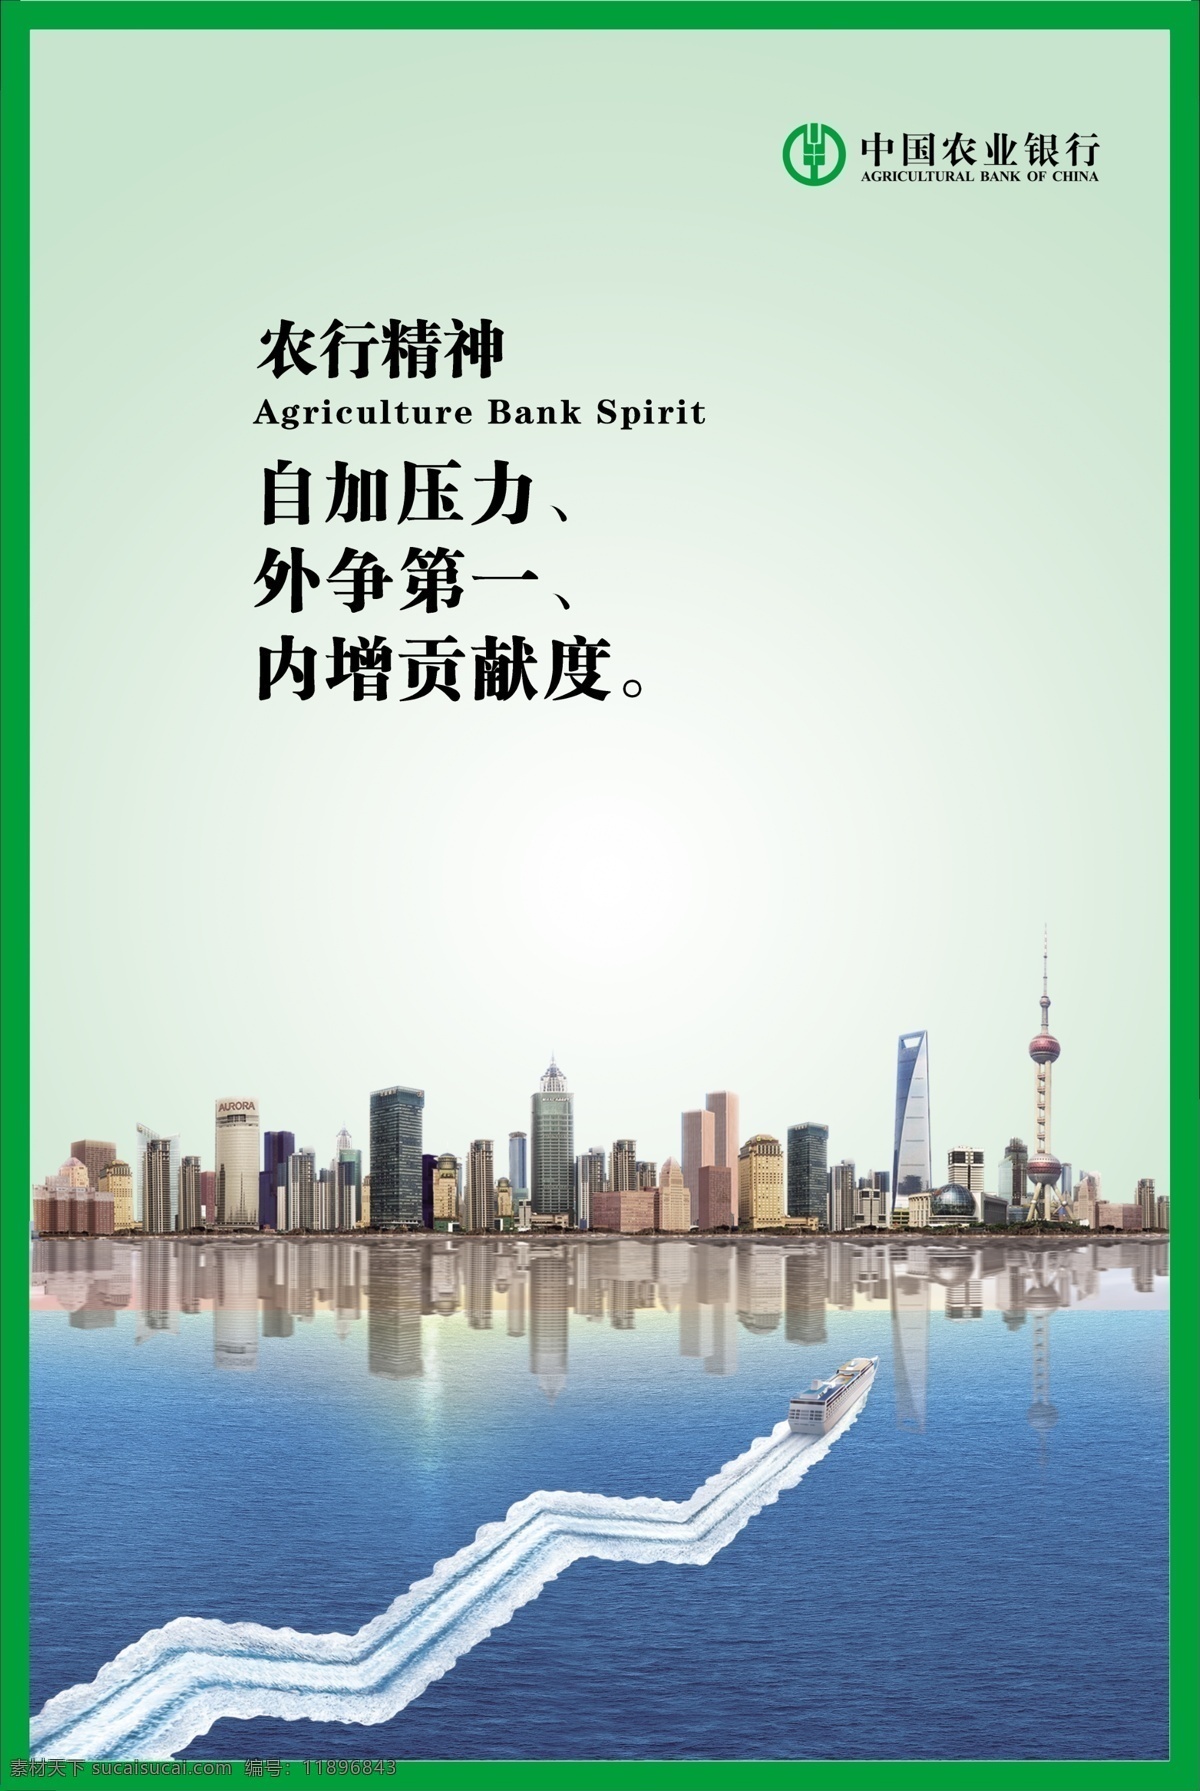 农行精神 自加压力 外争第一 贡献 上海 曲线图 游船 中国农业银行 城市 海 展板模板 广告设计模板 源文件